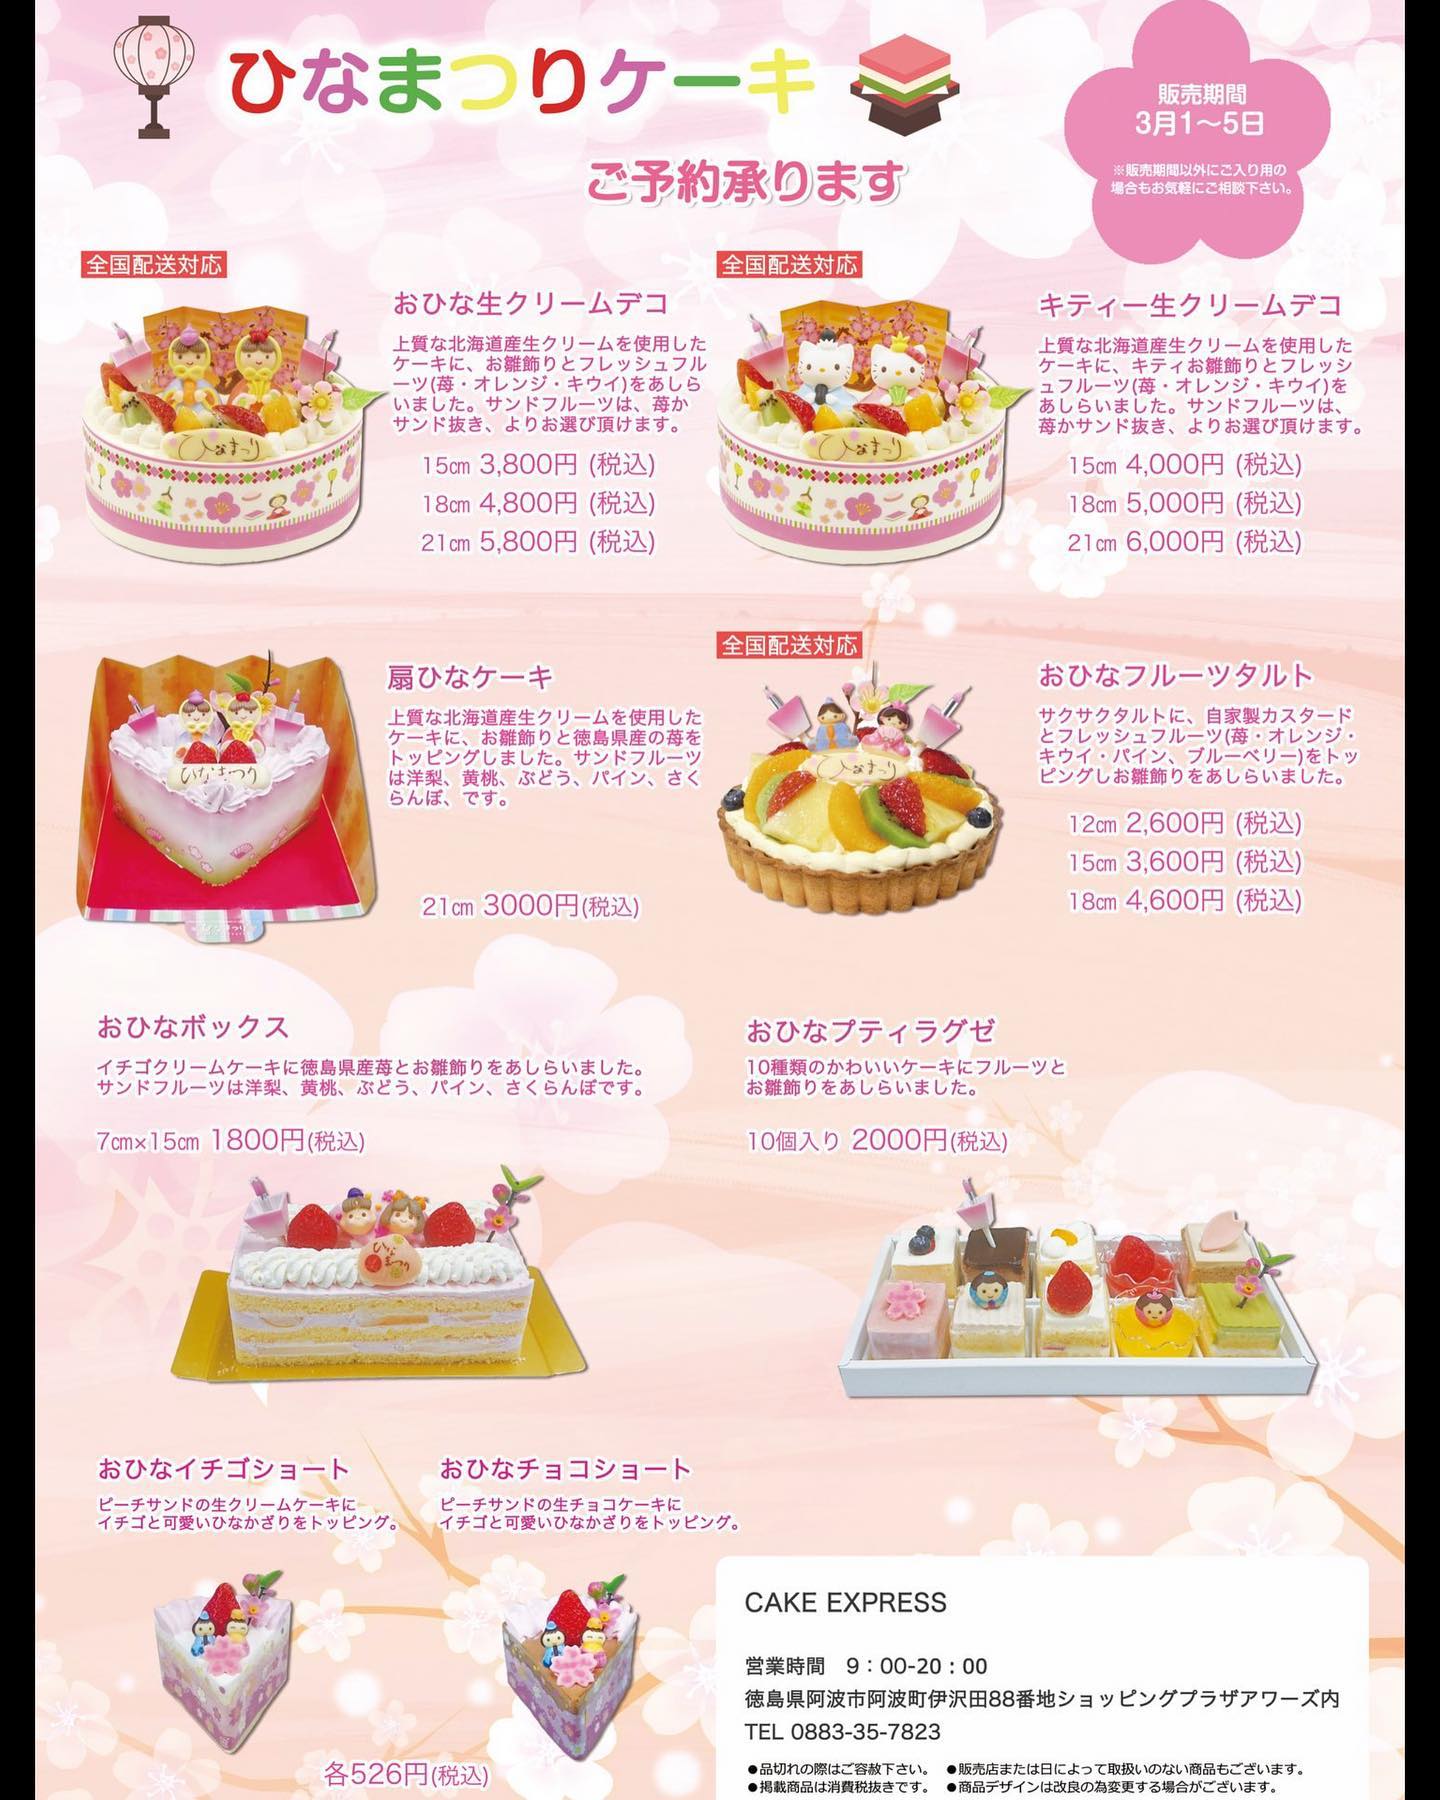 ひな祭りケーキのご予約を from Instagram